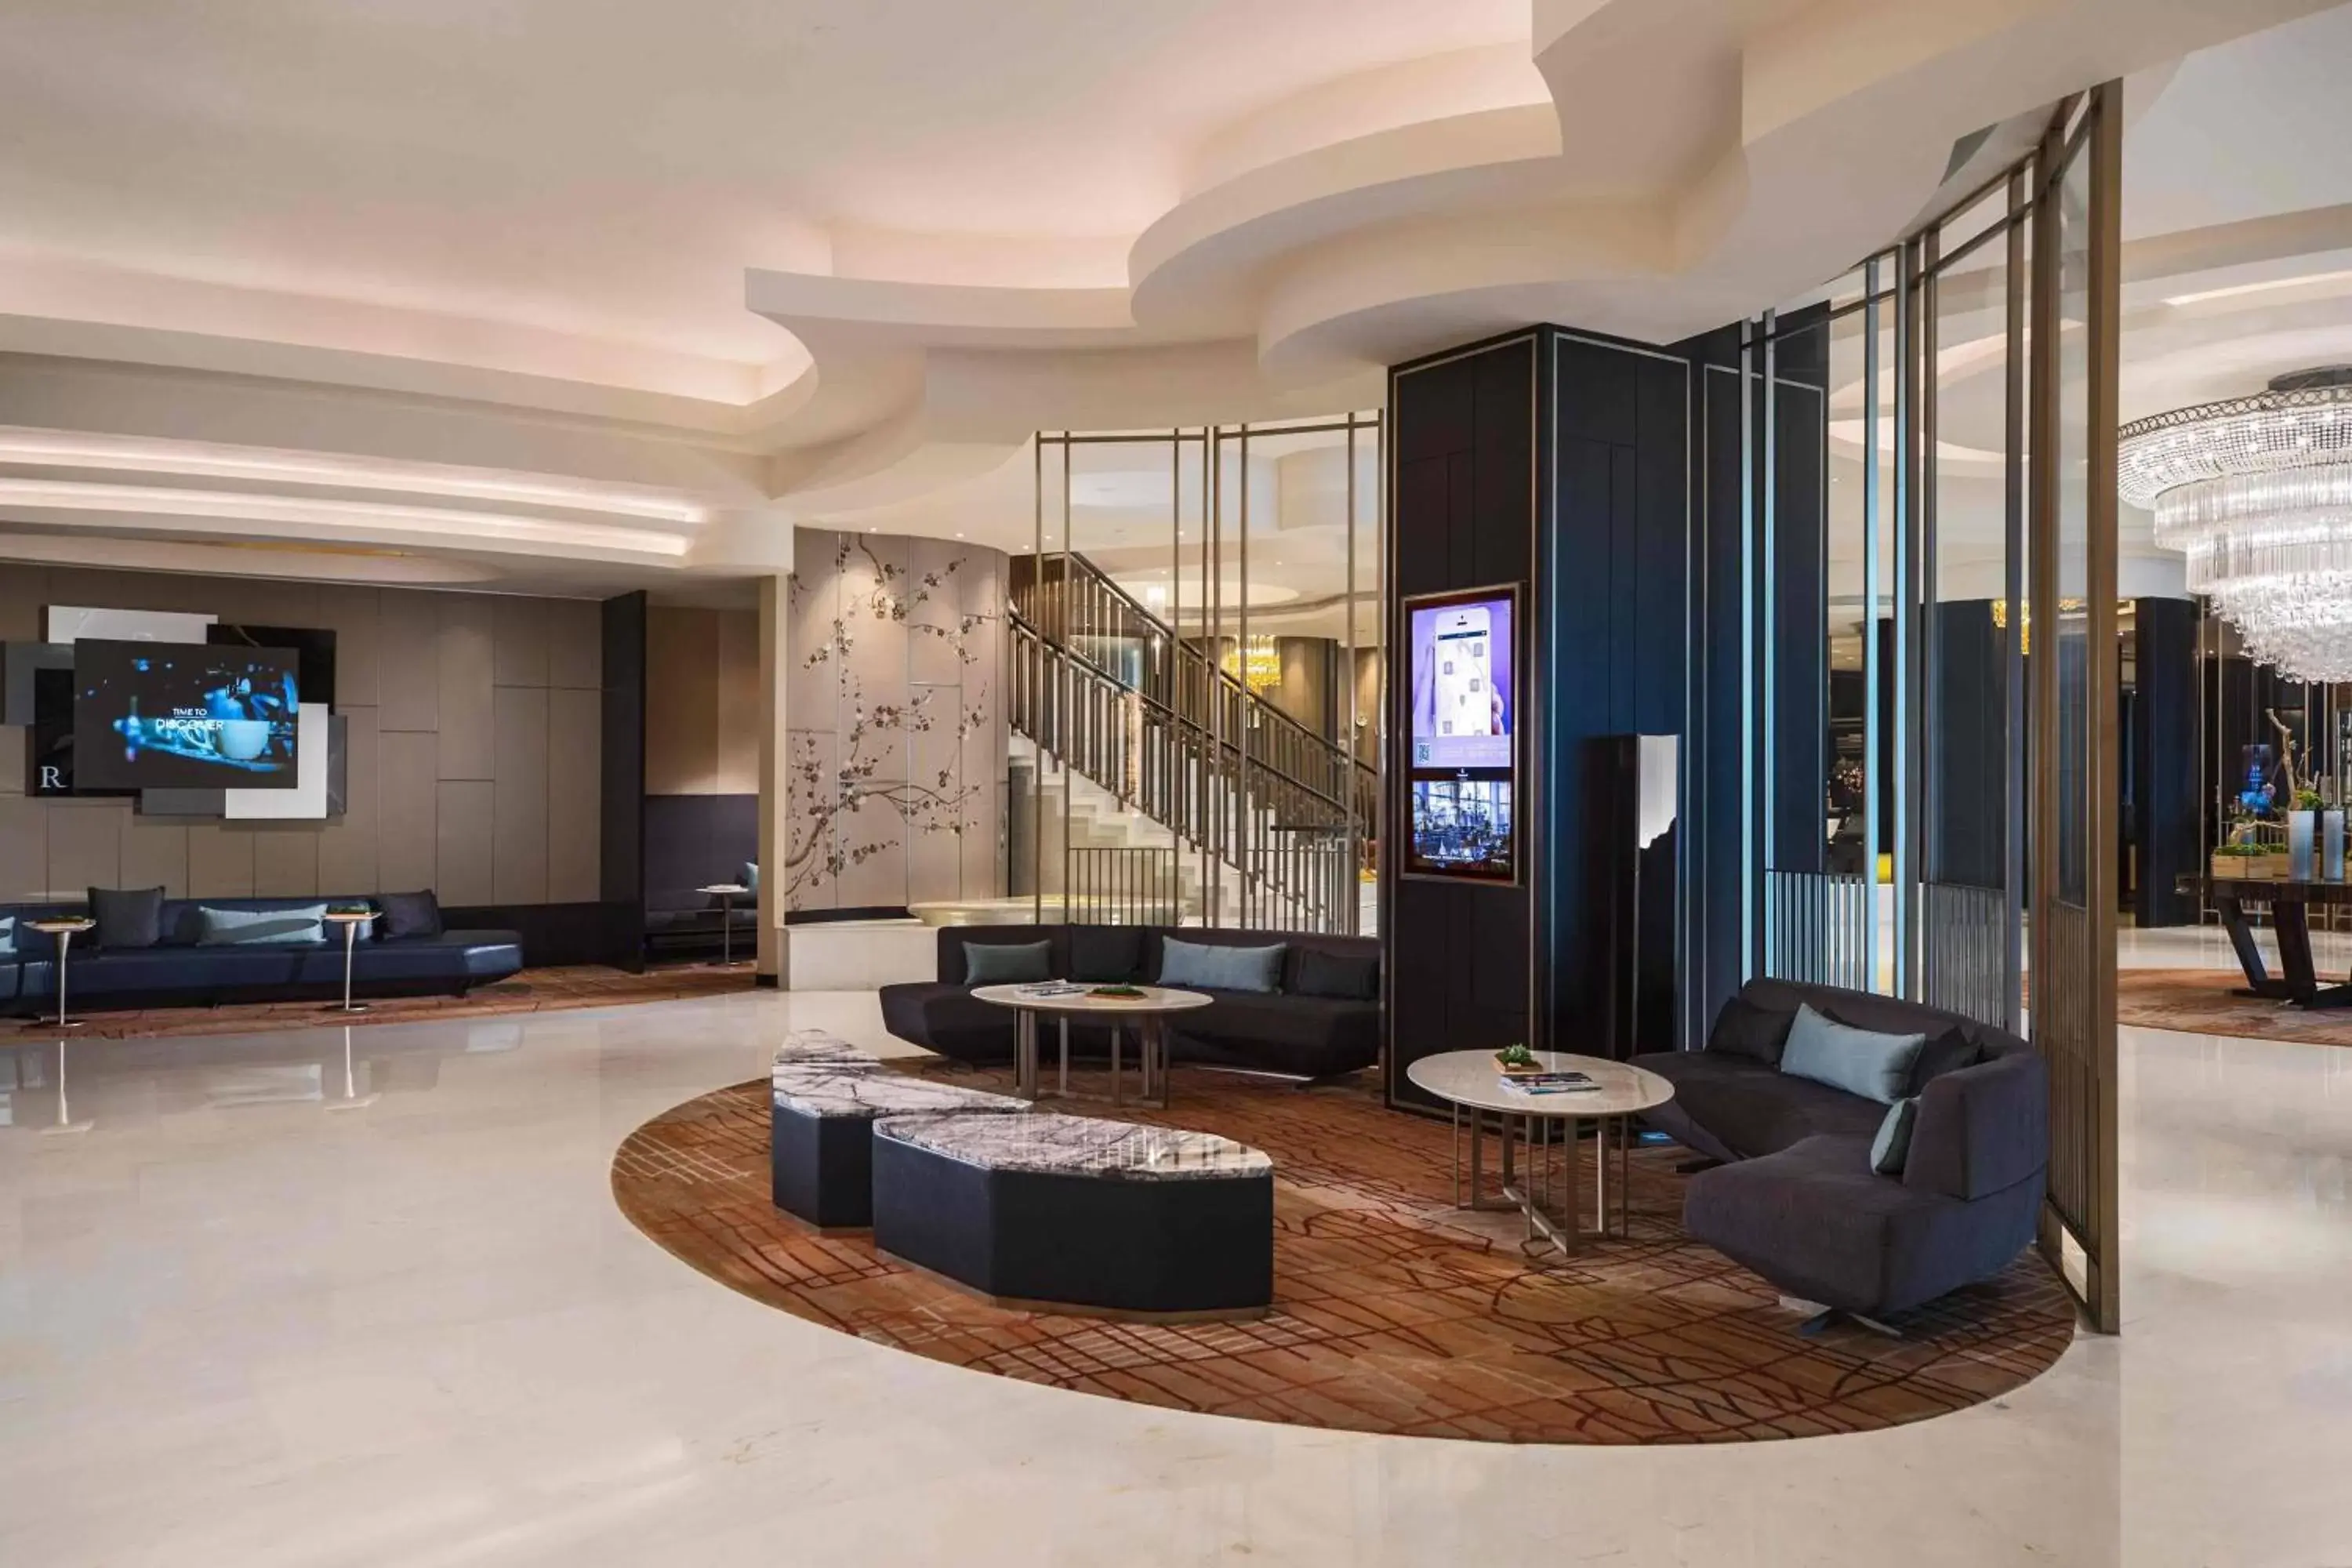 Lobby or reception, Lobby/Reception in Renaissance Suzhou Hotel